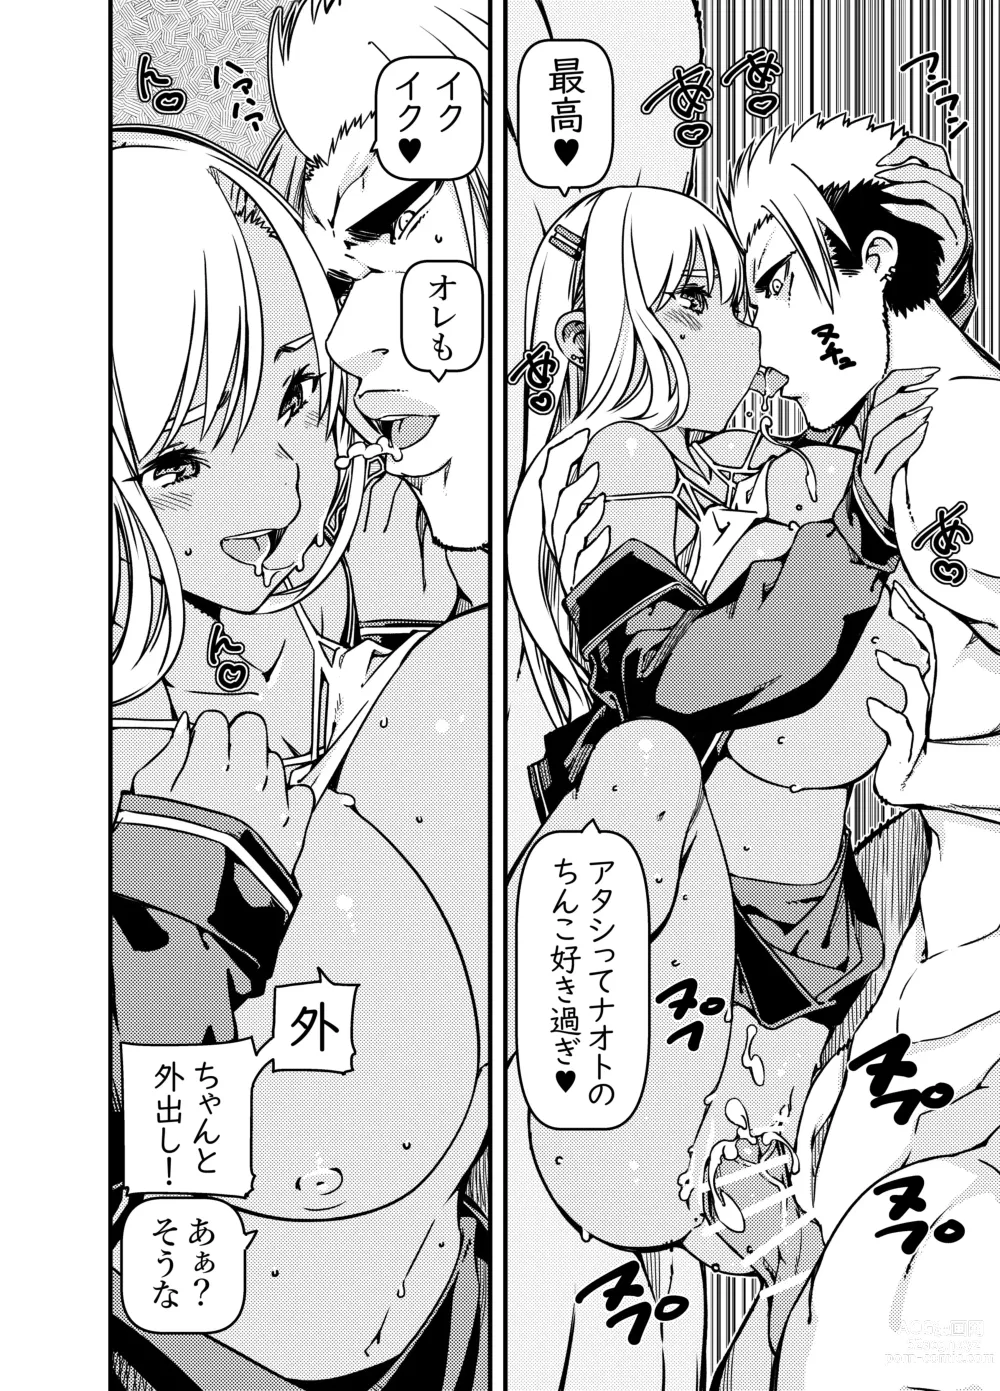 Page 7 of doujinshi Aniki no Kanojo no Kuro Gal to Heya ni Tojikomeraretan dakedo?